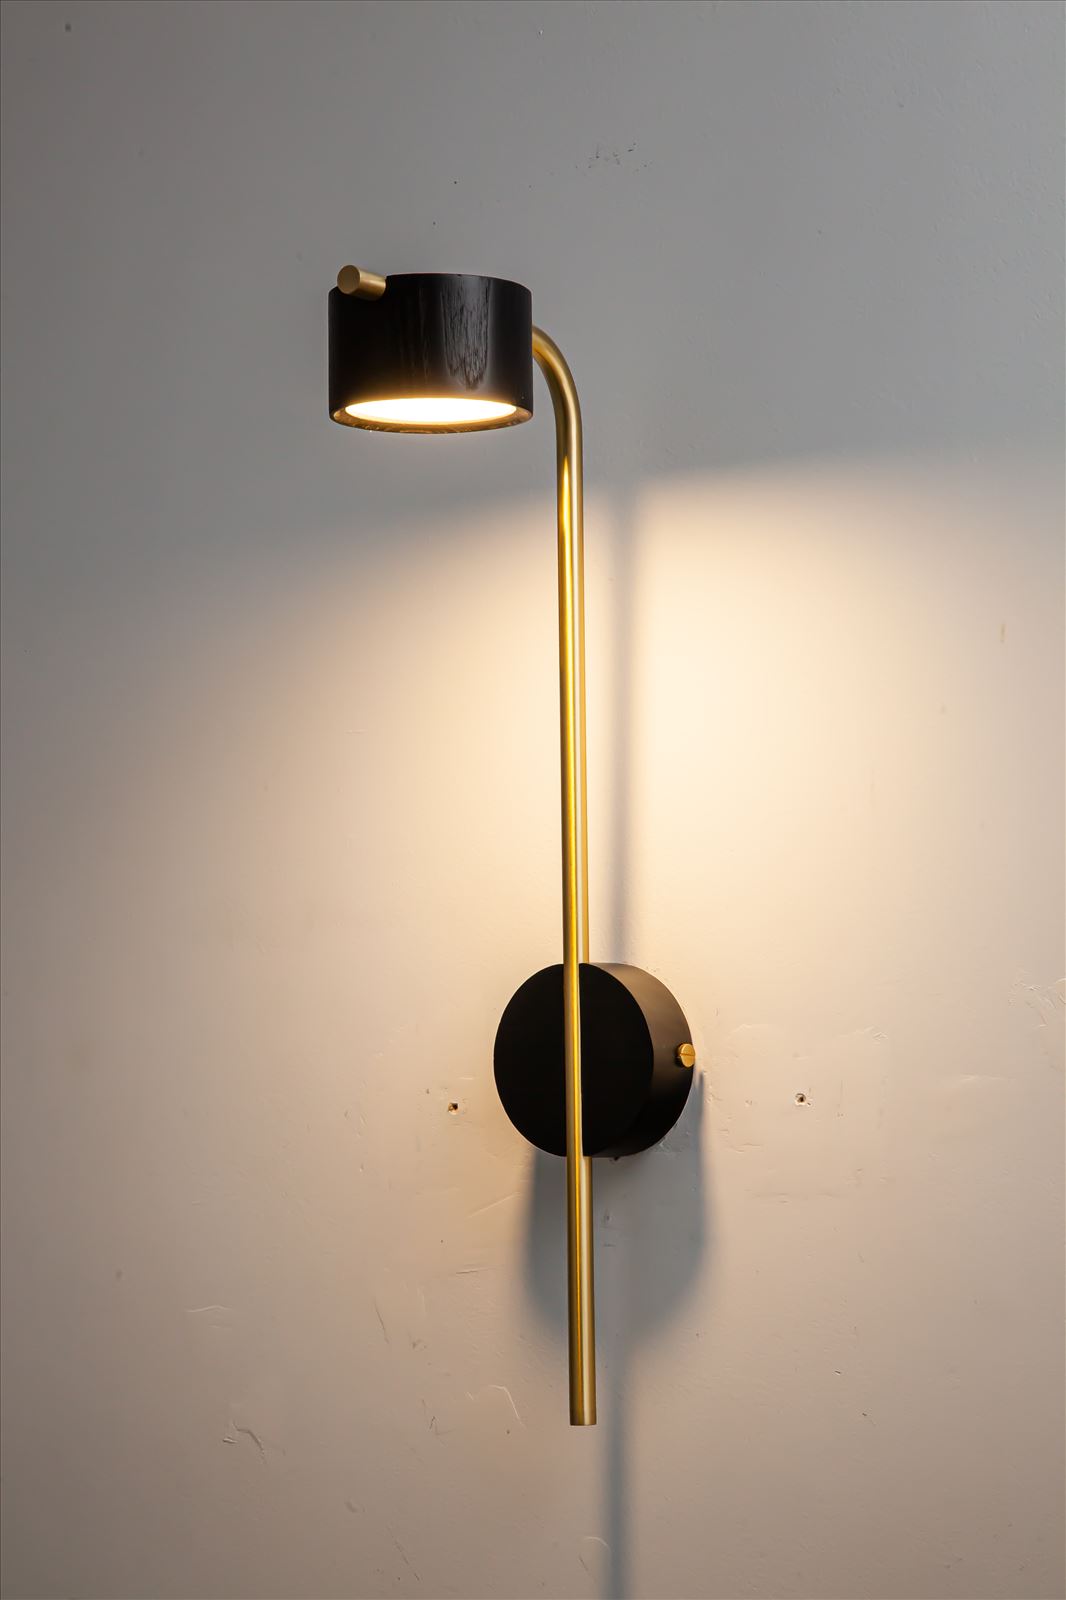 גופי תאורה בקטגוריית: מנורות קיר  ,שם המוצר: ASH